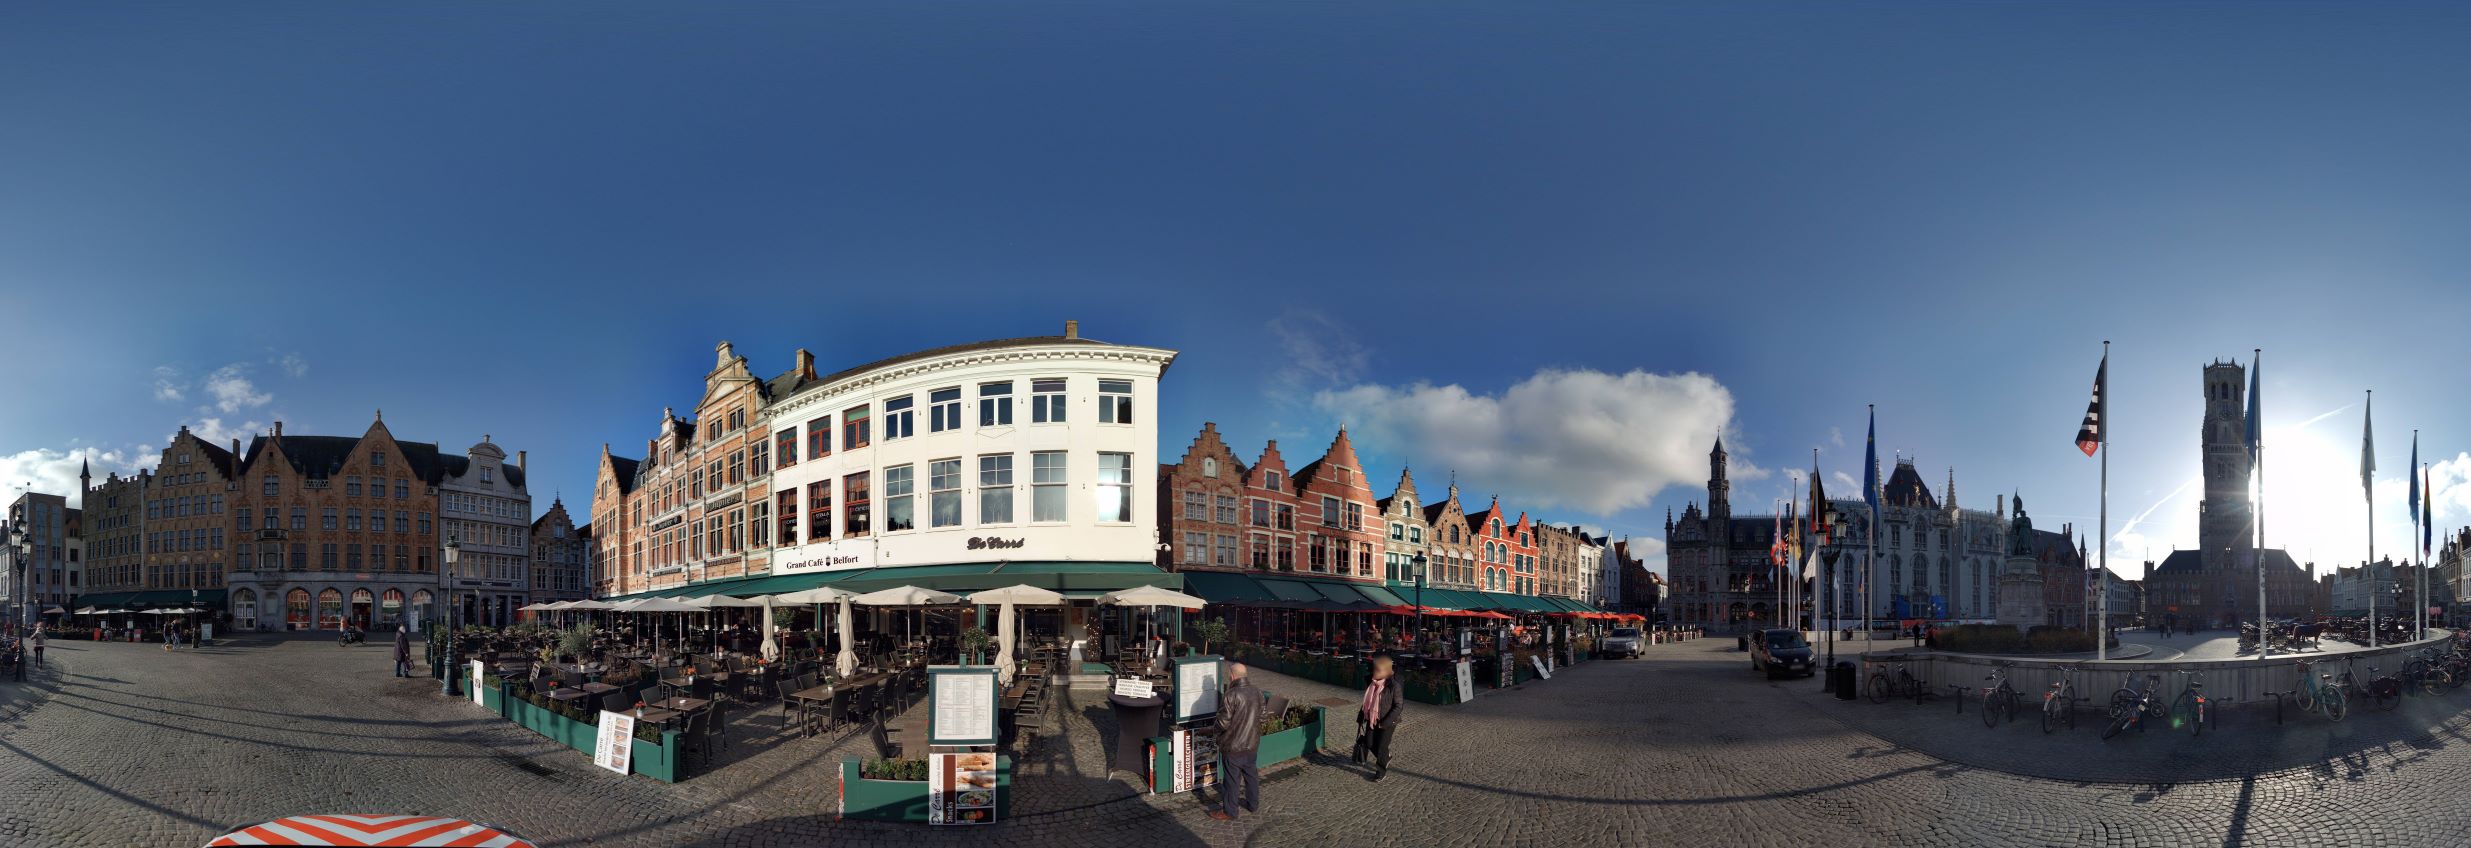 Markt Brugge